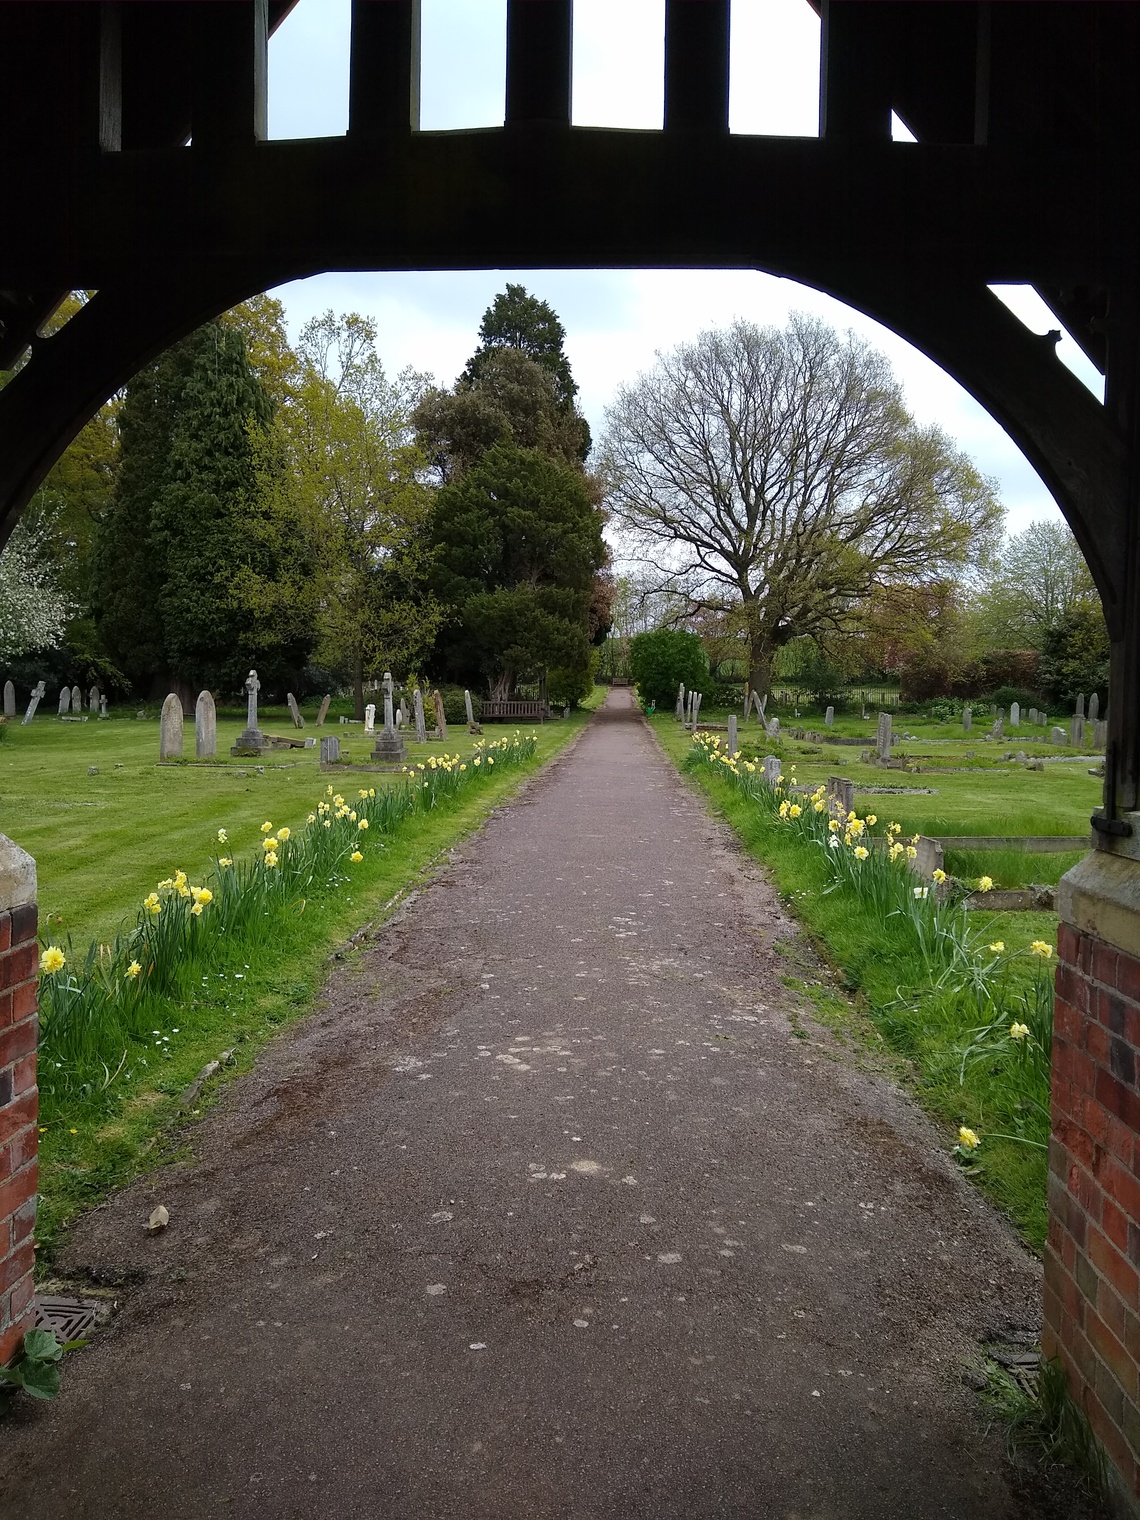 View through cemetery entrance